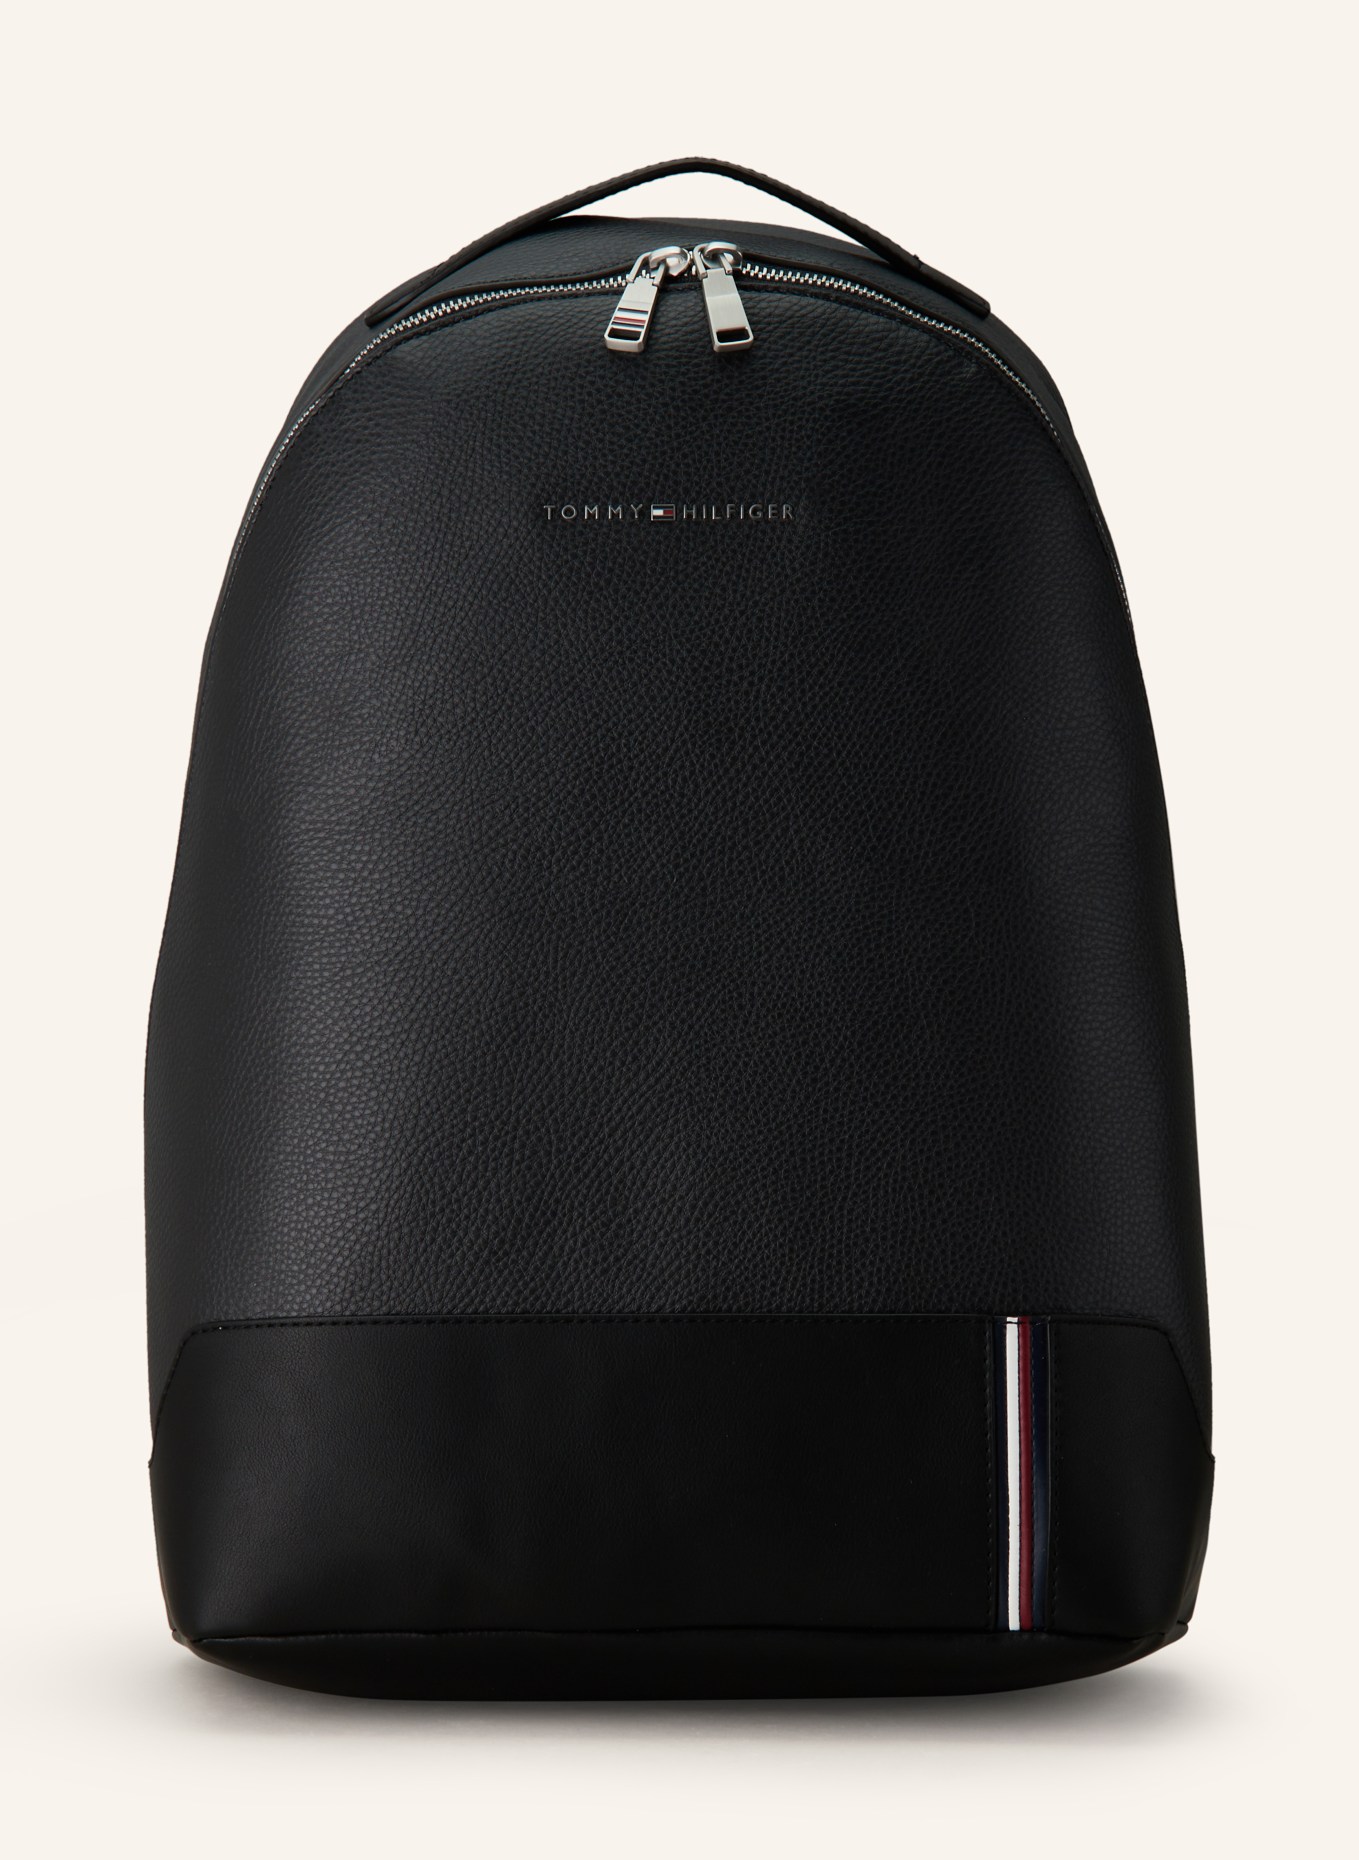 TOMMY HILFIGER Backpack TH CENTRAL, Color: DARK GRAY/ BLACK (Image 1)